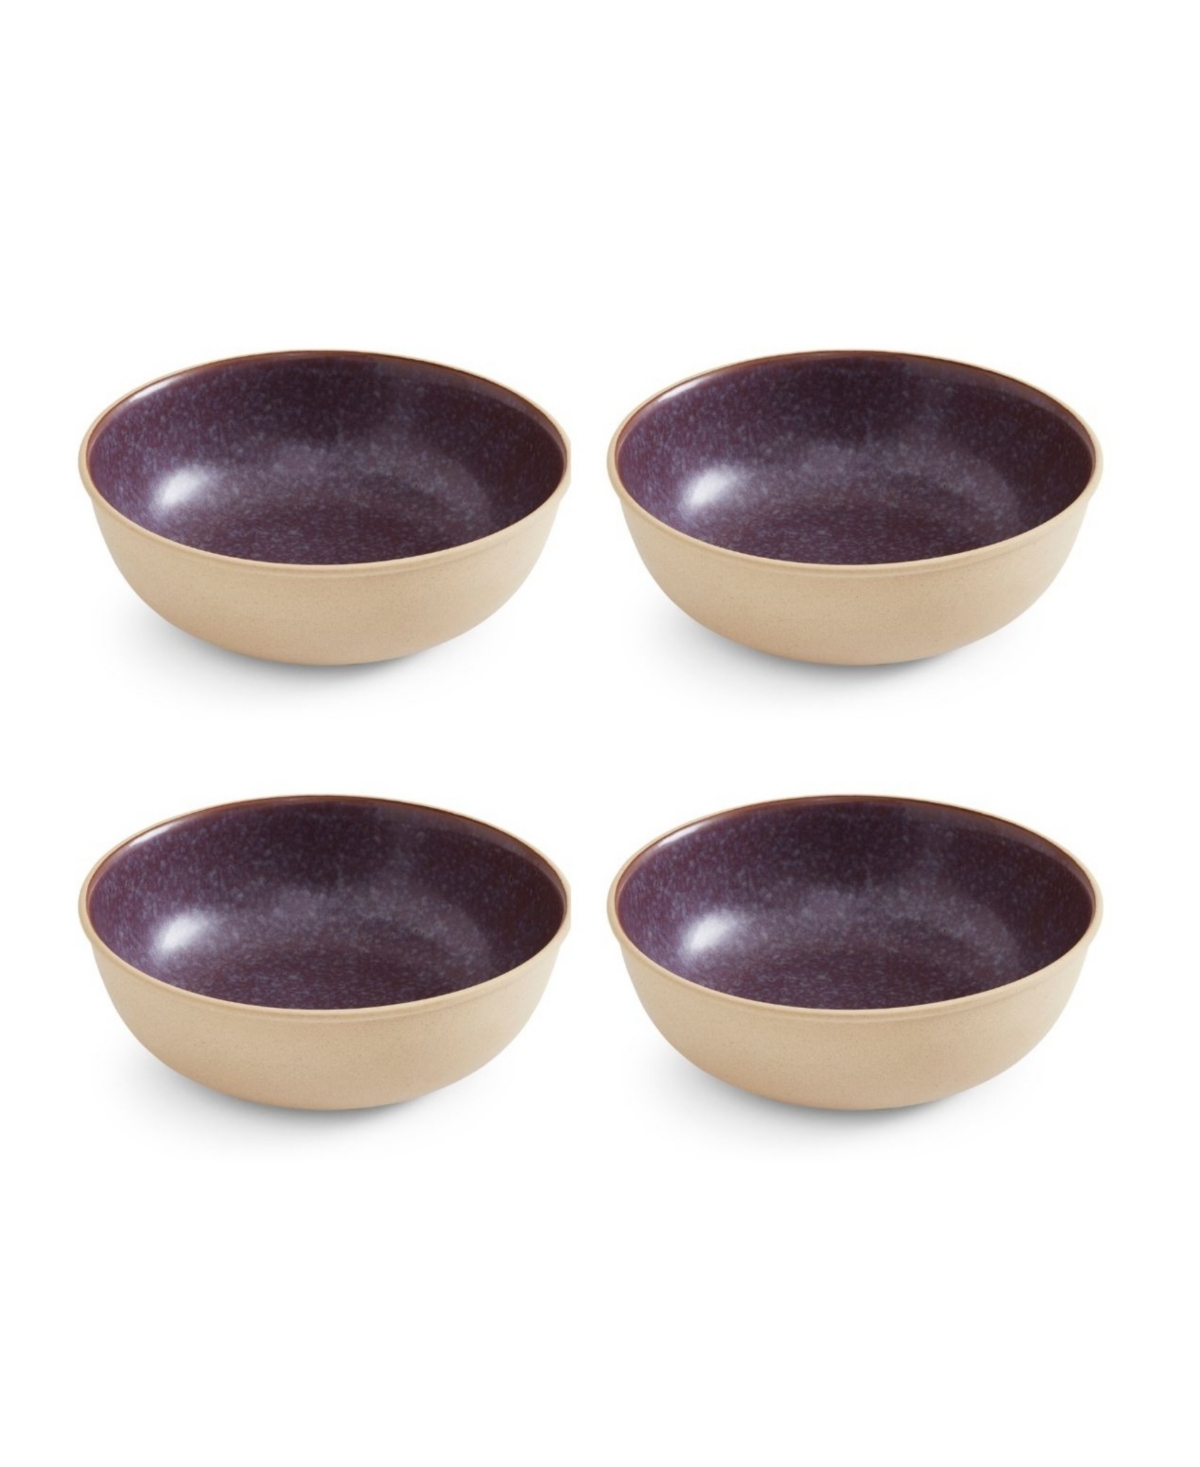 Minerals Medium Serving Bowls, Set of 4 - Purple